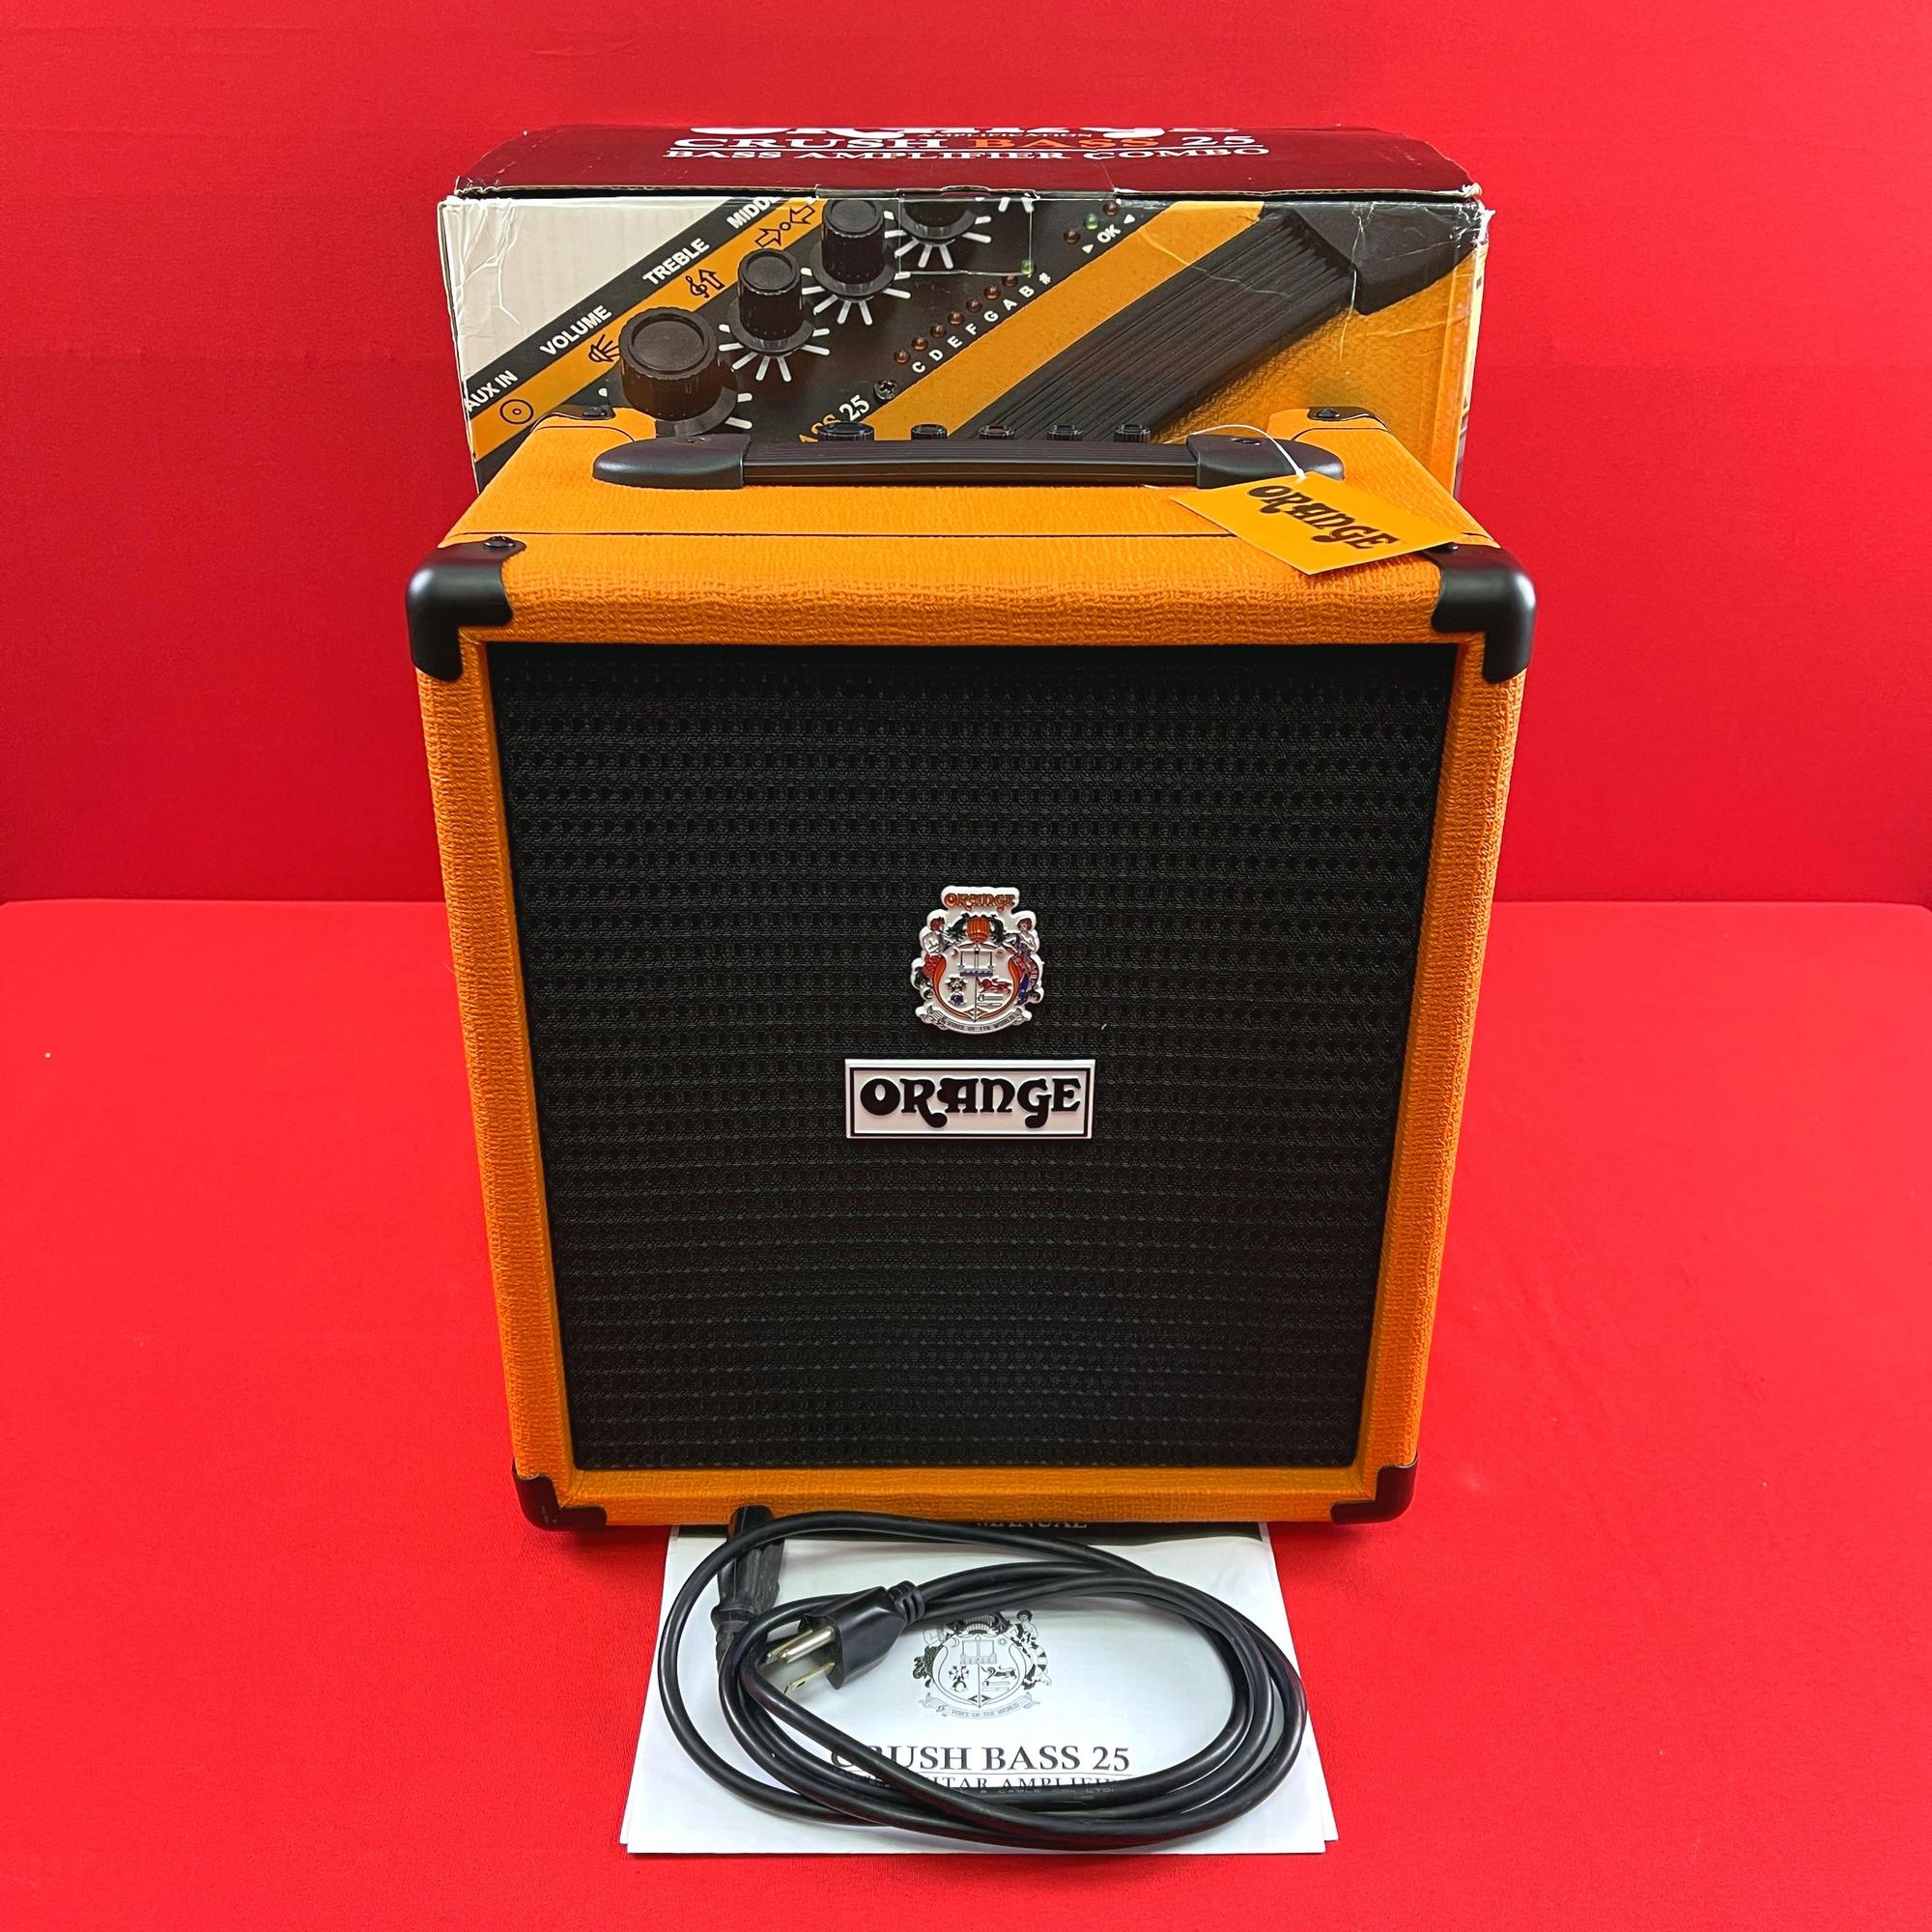 [USED] Orange Crush Bass 25 watt Bass Guitar Amp Combo, Orange